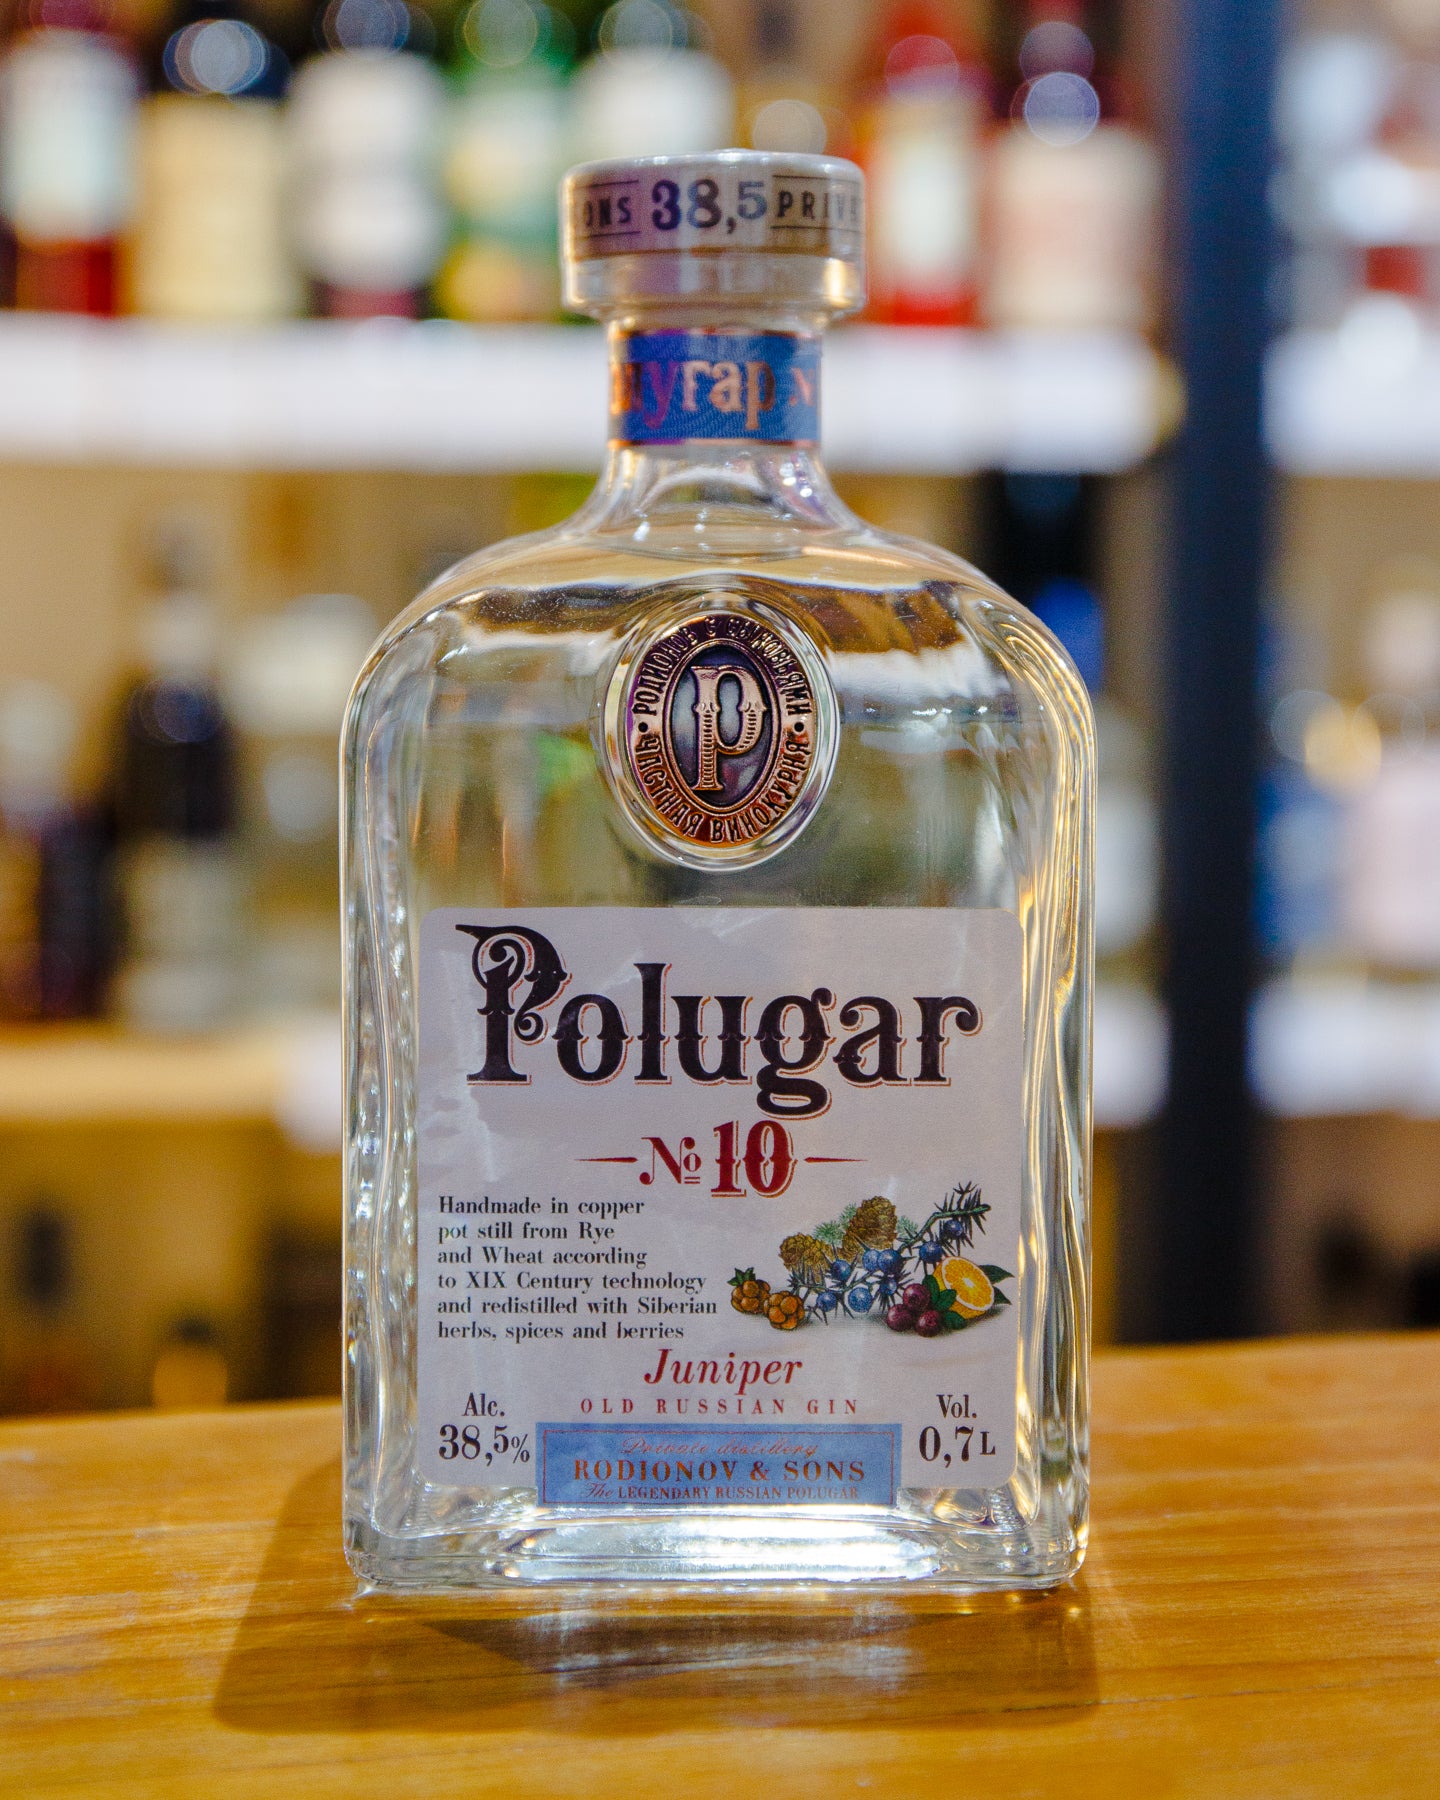 Polugar Gin No. 10